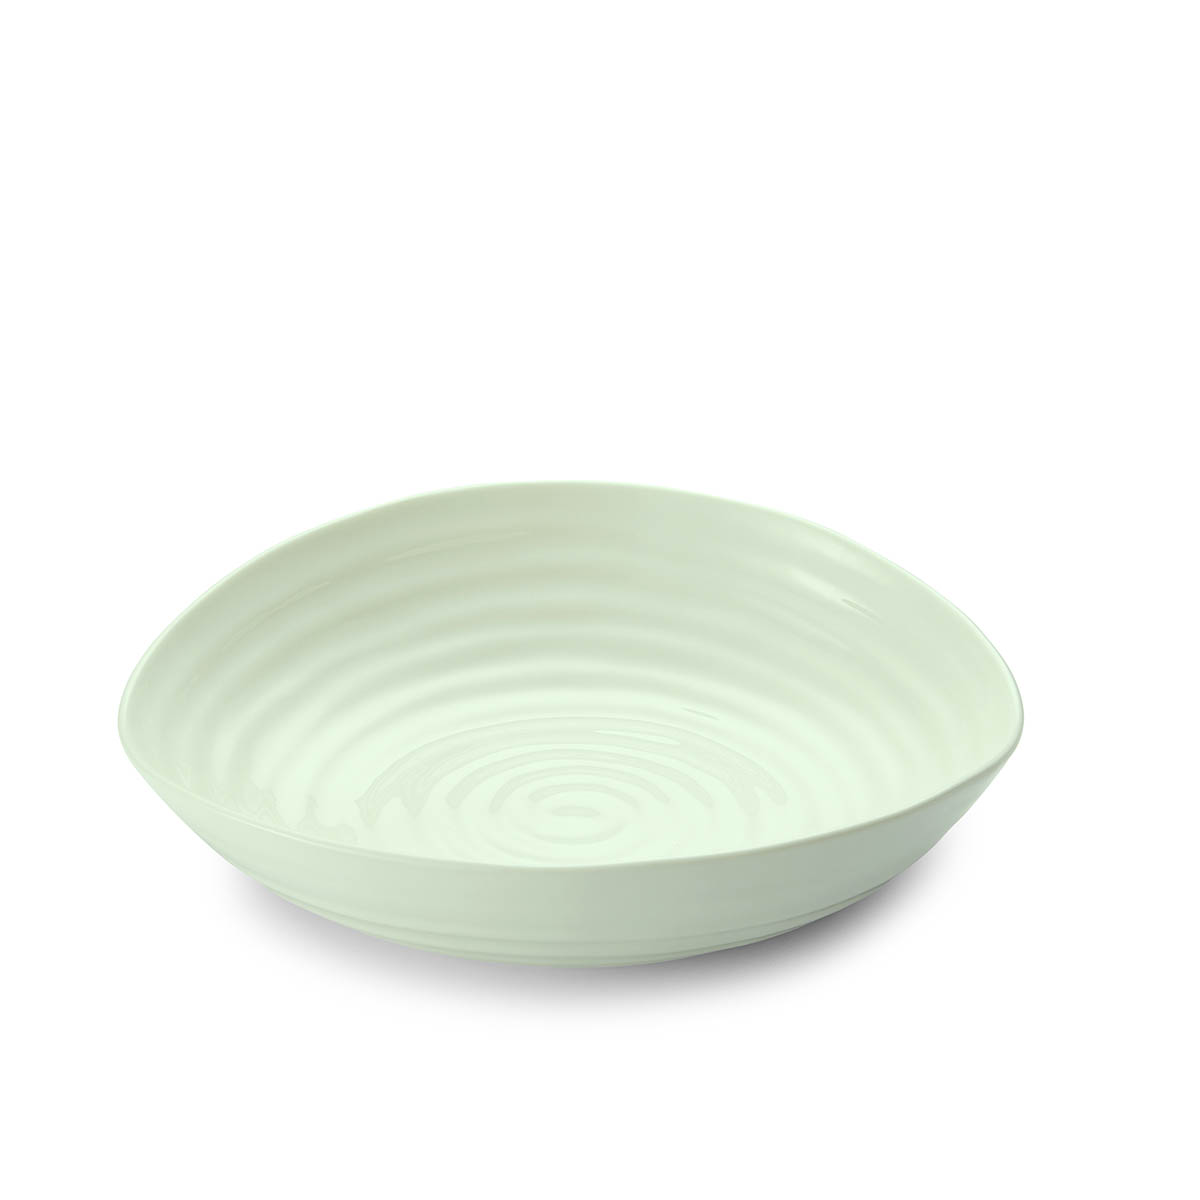 Sophie Conran Celadon Pasta Bowls Set of 4 image number null